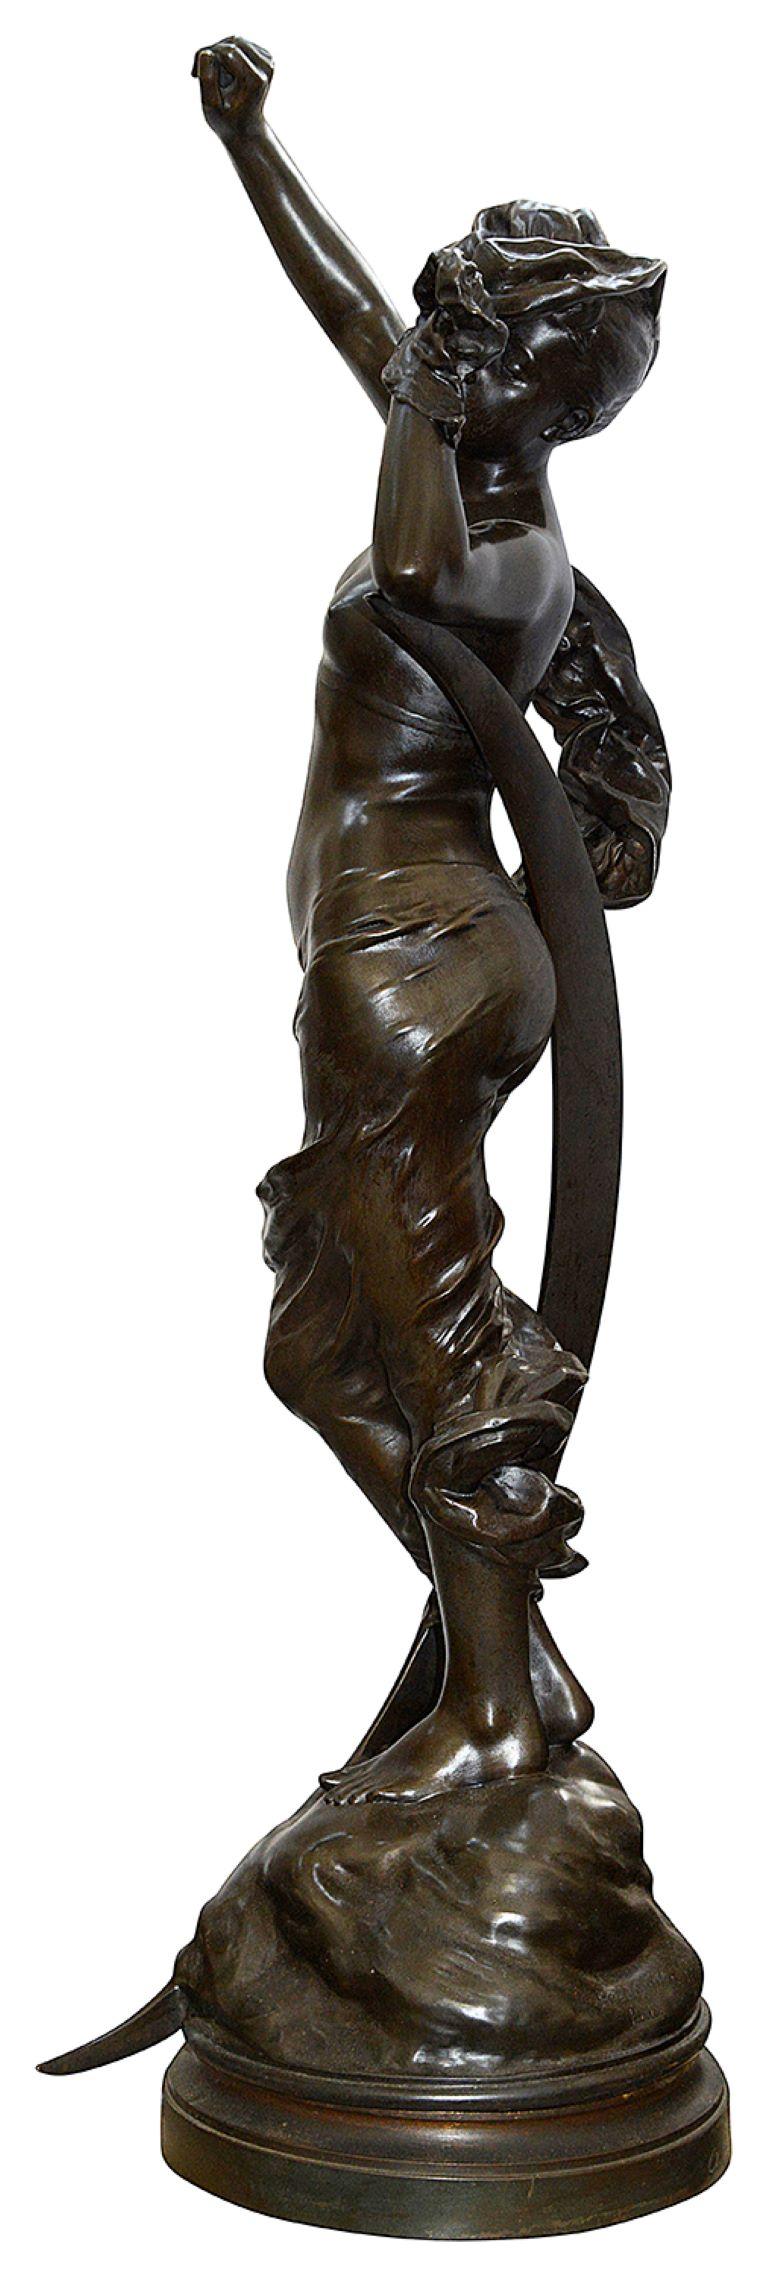 Statue en bronze de très bonne qualité datant de la fin du XIXe siècle, représentant une jeune fille semi-vêtue, les bras tendus, debout devant le croissant de lune.
Signé ; Henri HENRY. Henri HENRY a fondé son entreprise en 1845. Il a acquis une